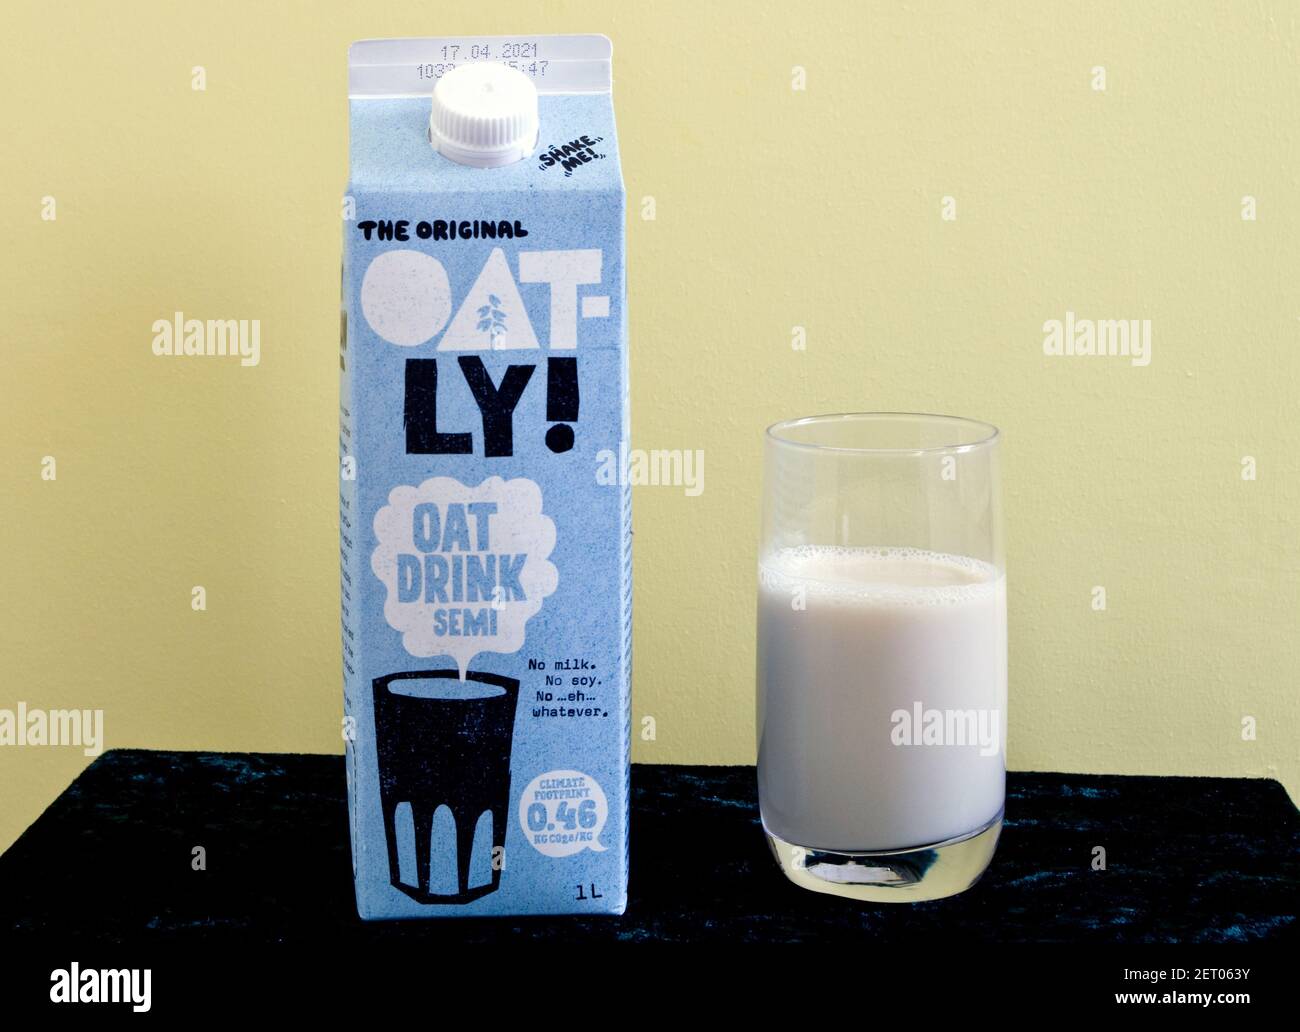 Das Original Oatly Semi Oat Drink, EINE vegane Alternative zur Milch auf Milchbasis, Großbritannien Stockfoto